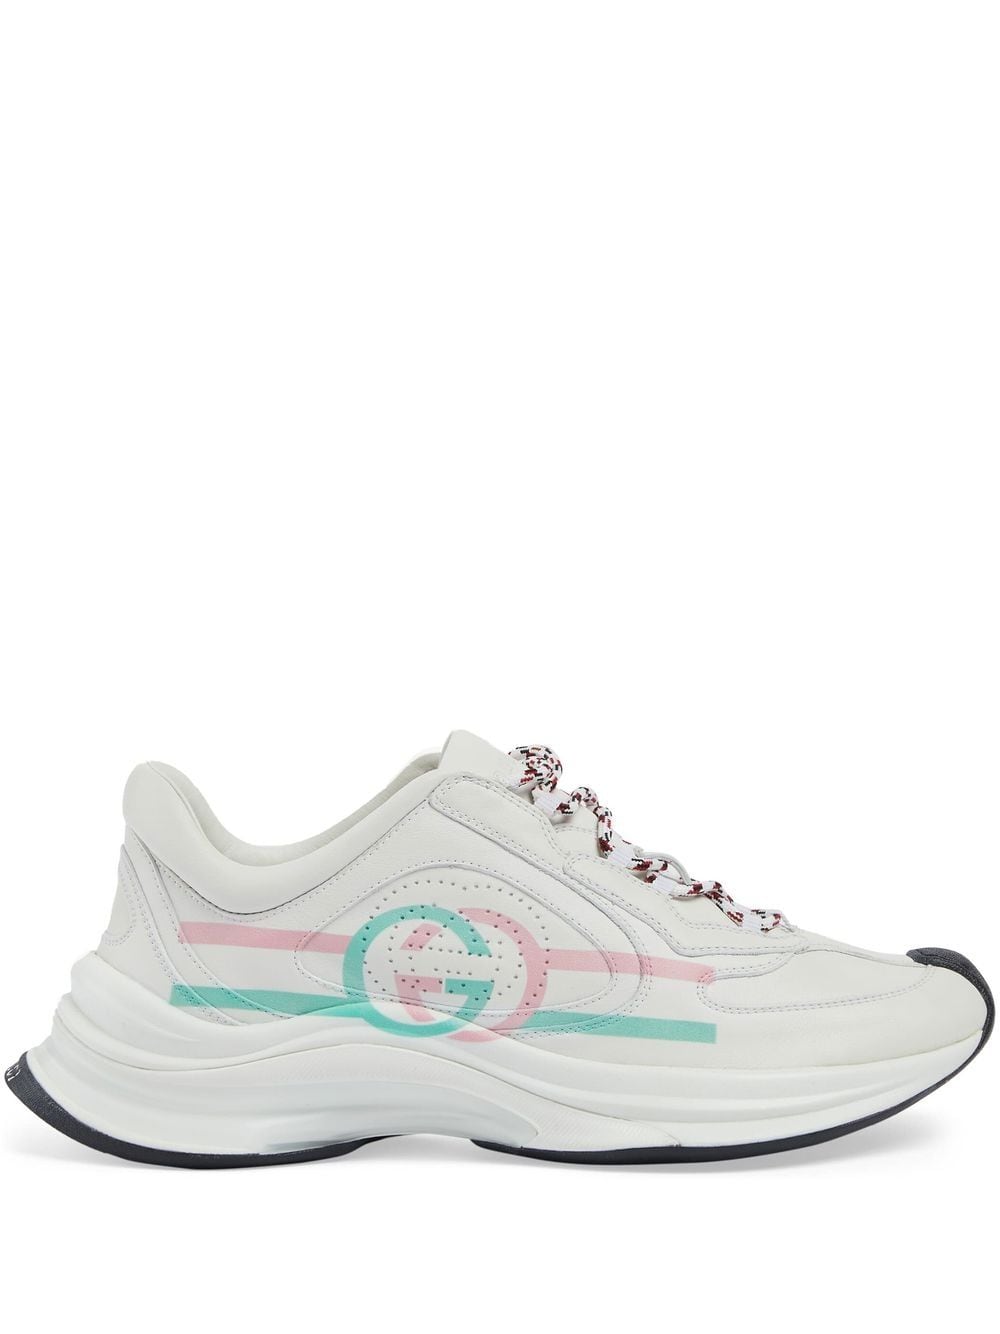 إسم المنتج: حذاء سنيكرز نسائي أبيض ووردي وأخضر